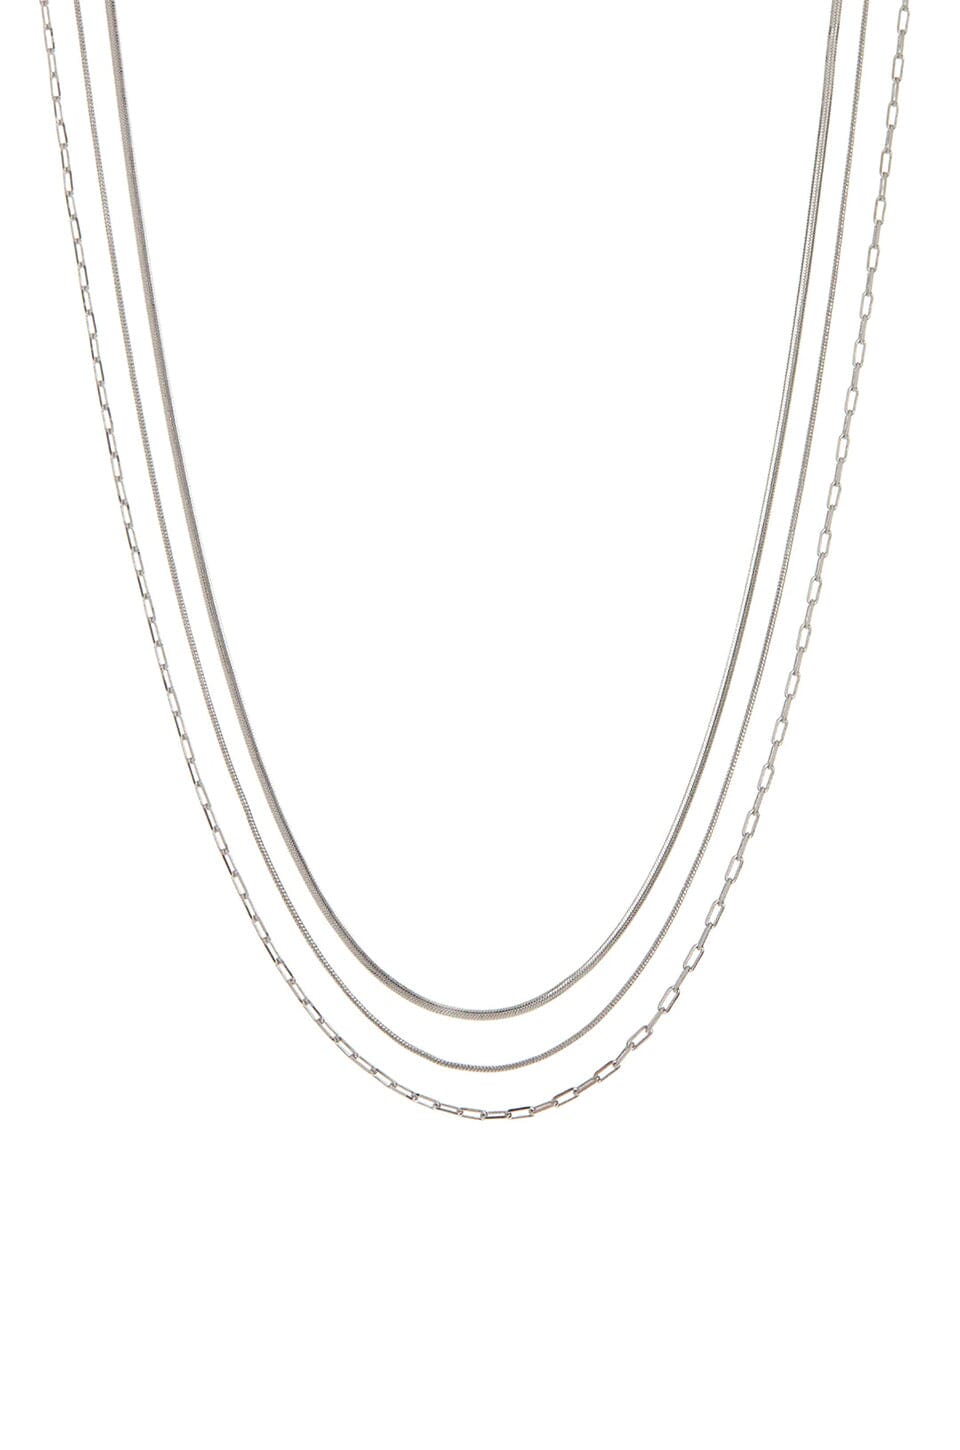 LUV AJ | Chandon Multi Chain Necklace